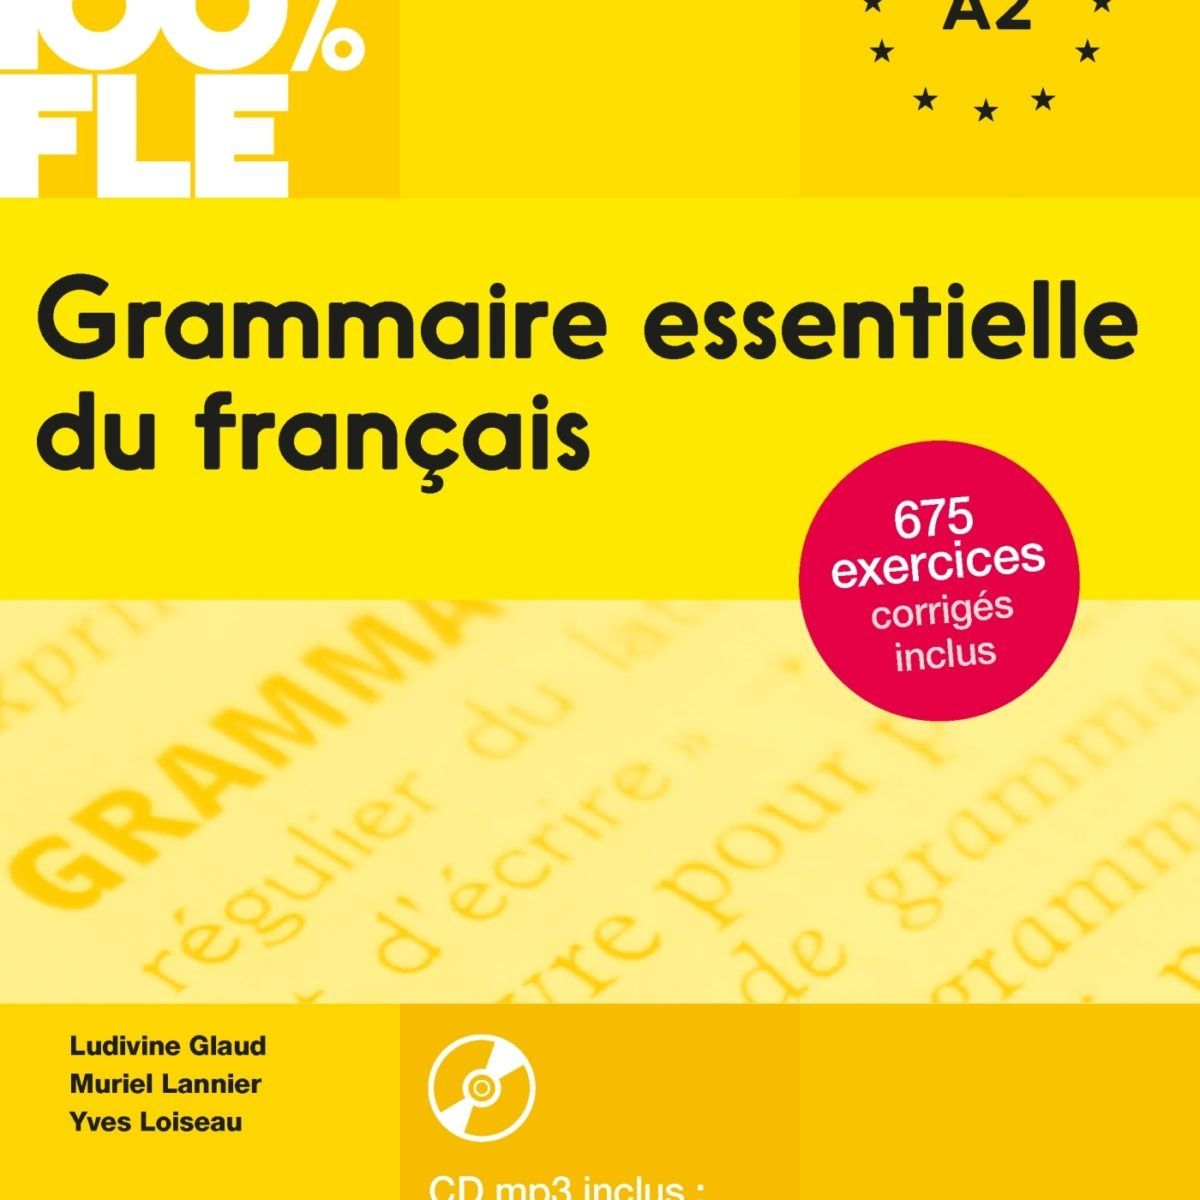 Grammaire essentielle du francais 100 %, А1-А2, французька,  français